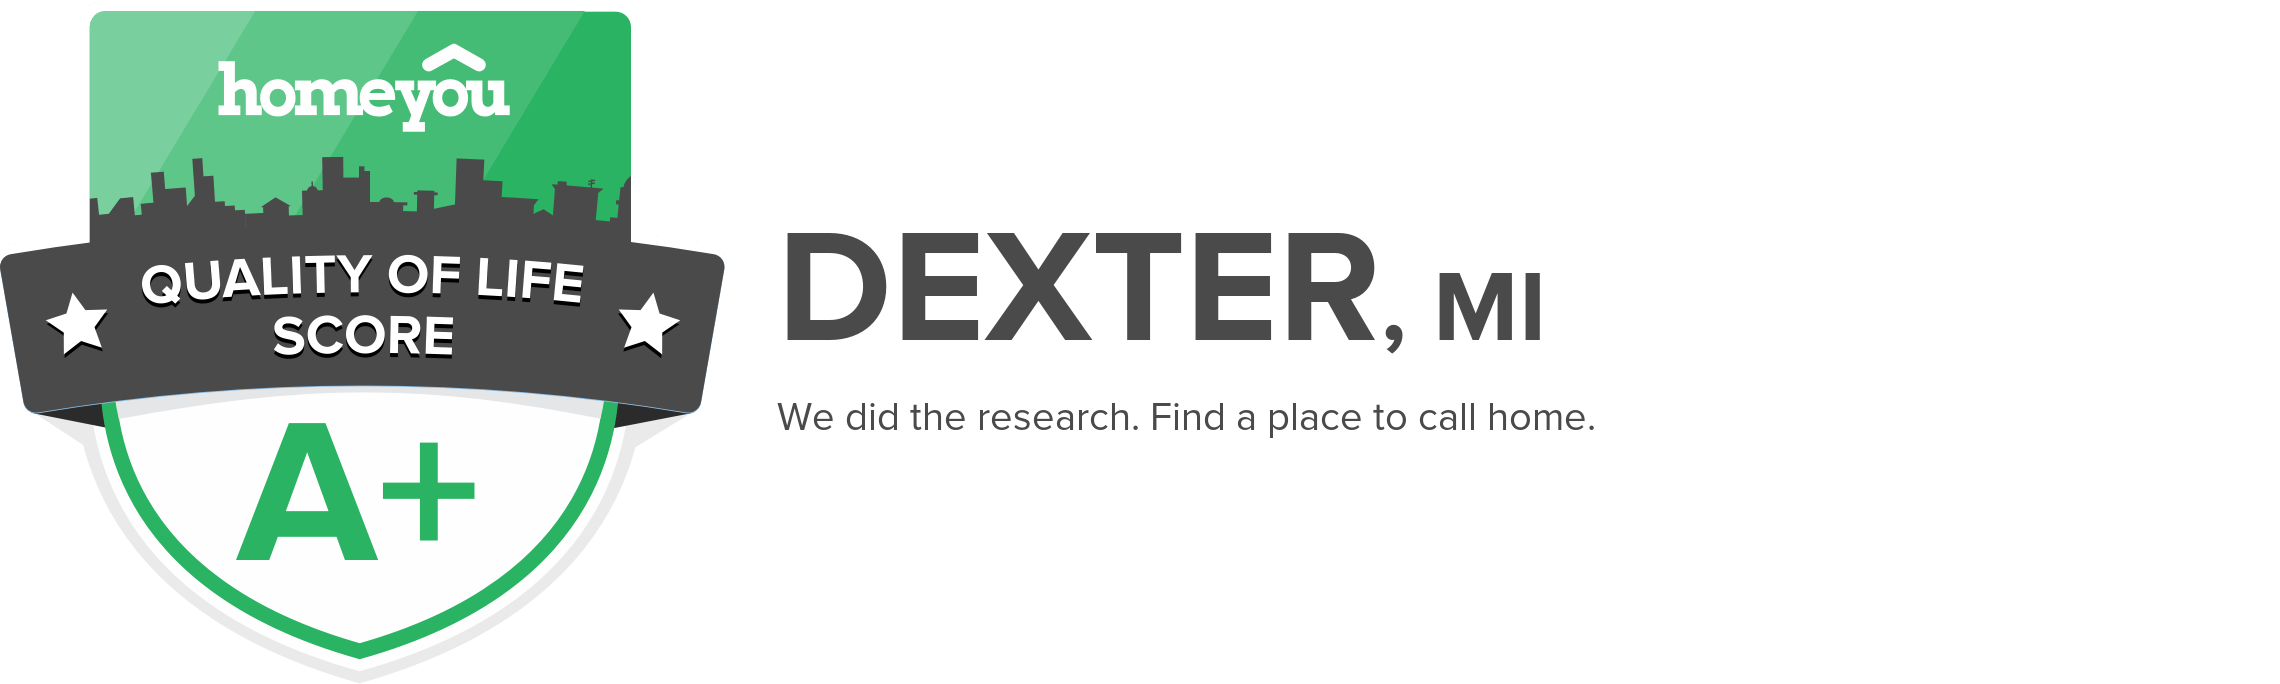 Dexter, MI